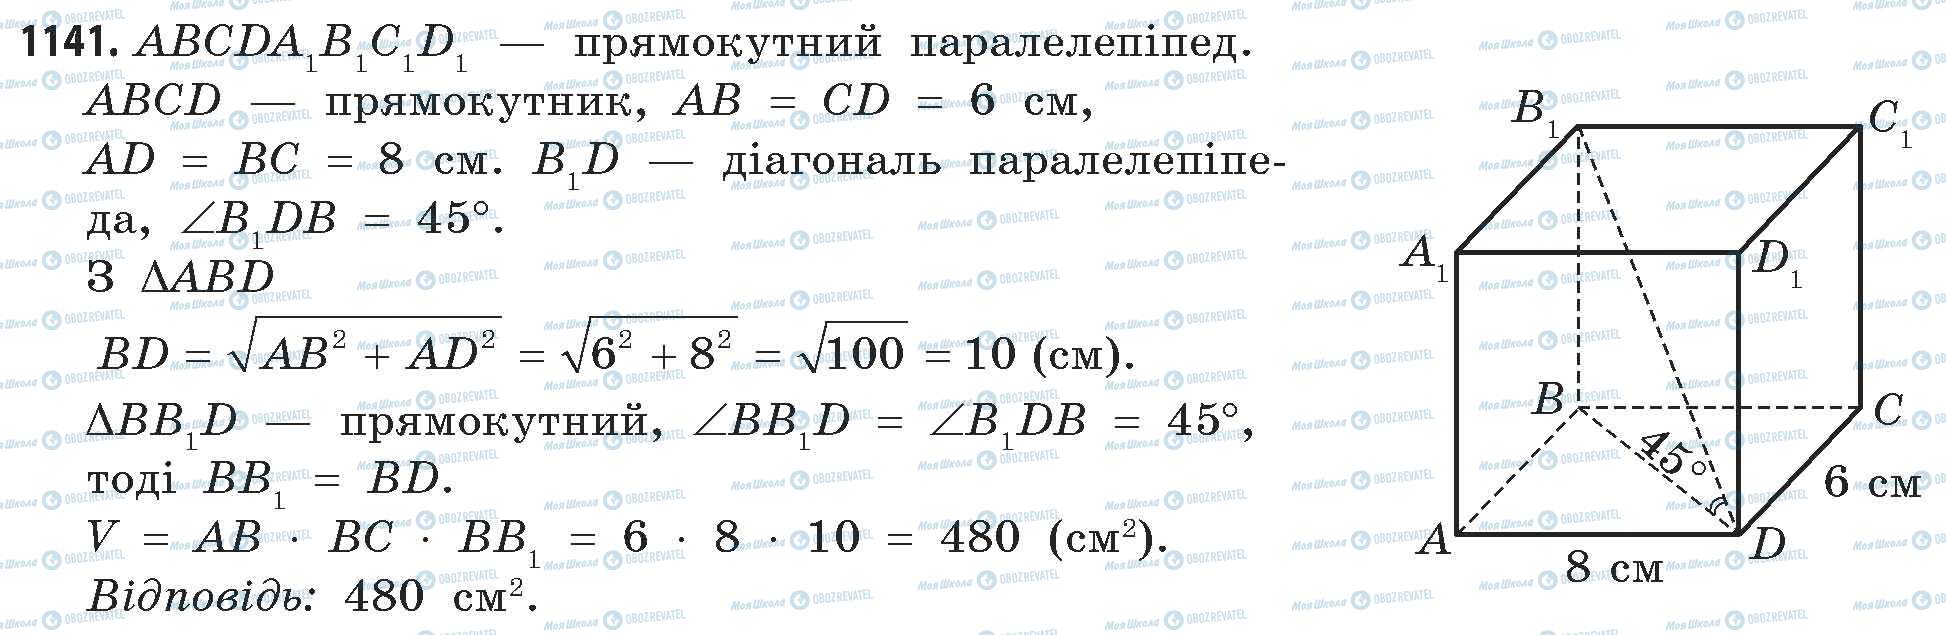 ГДЗ Математика 11 класс страница 1141